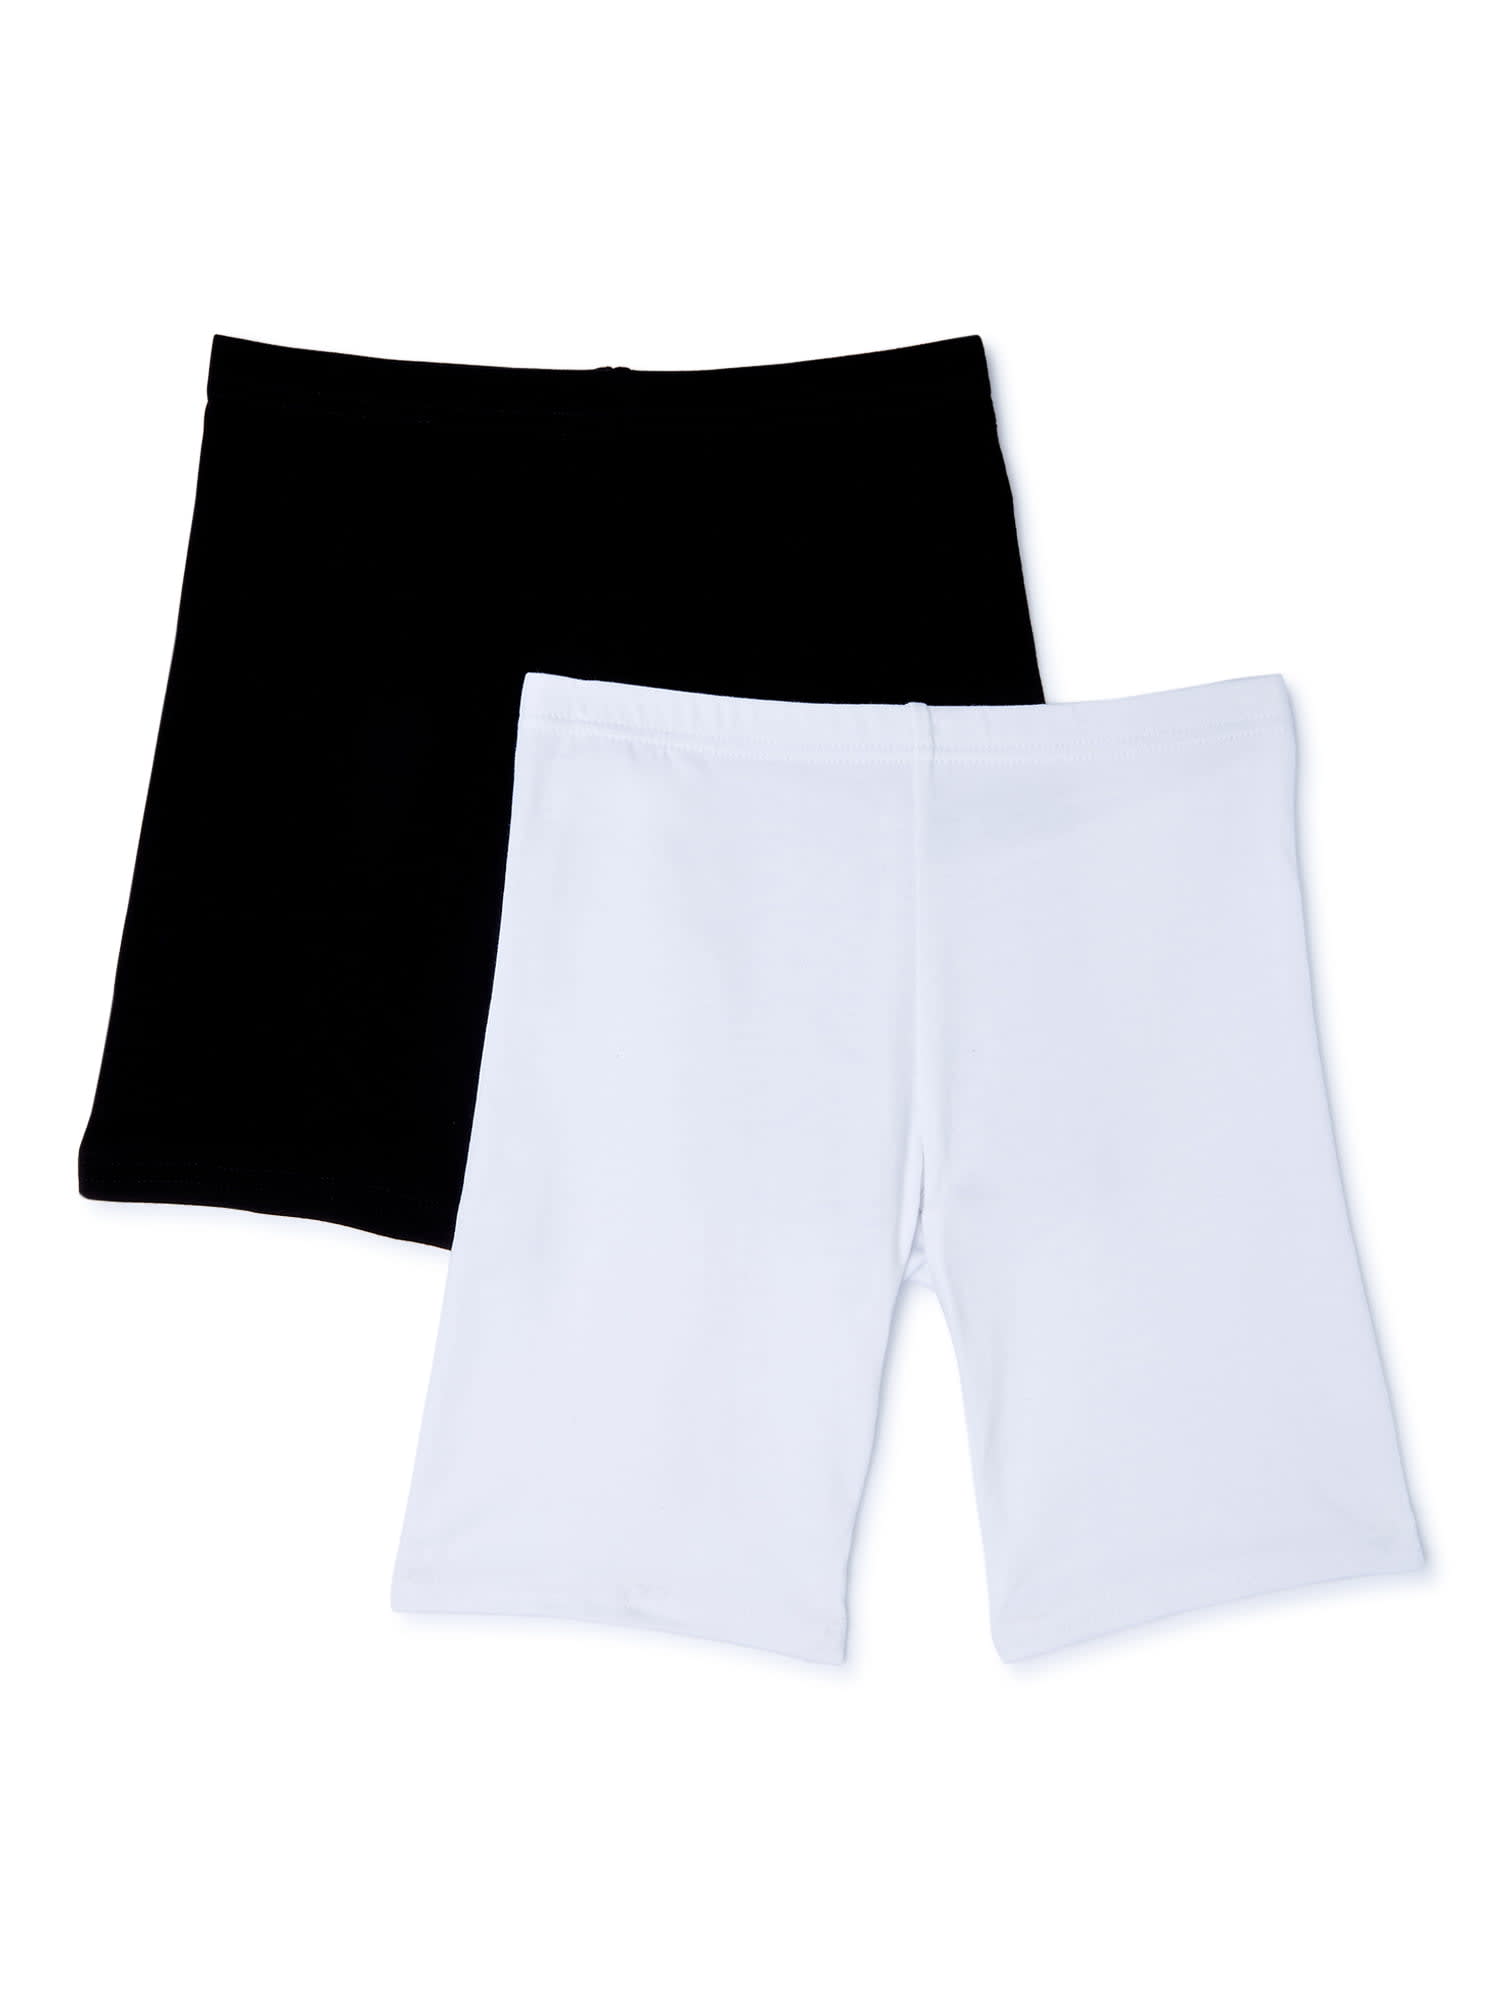 Athletic Works Girls' Underwear, 10-Pack Seamless Briefs (Little